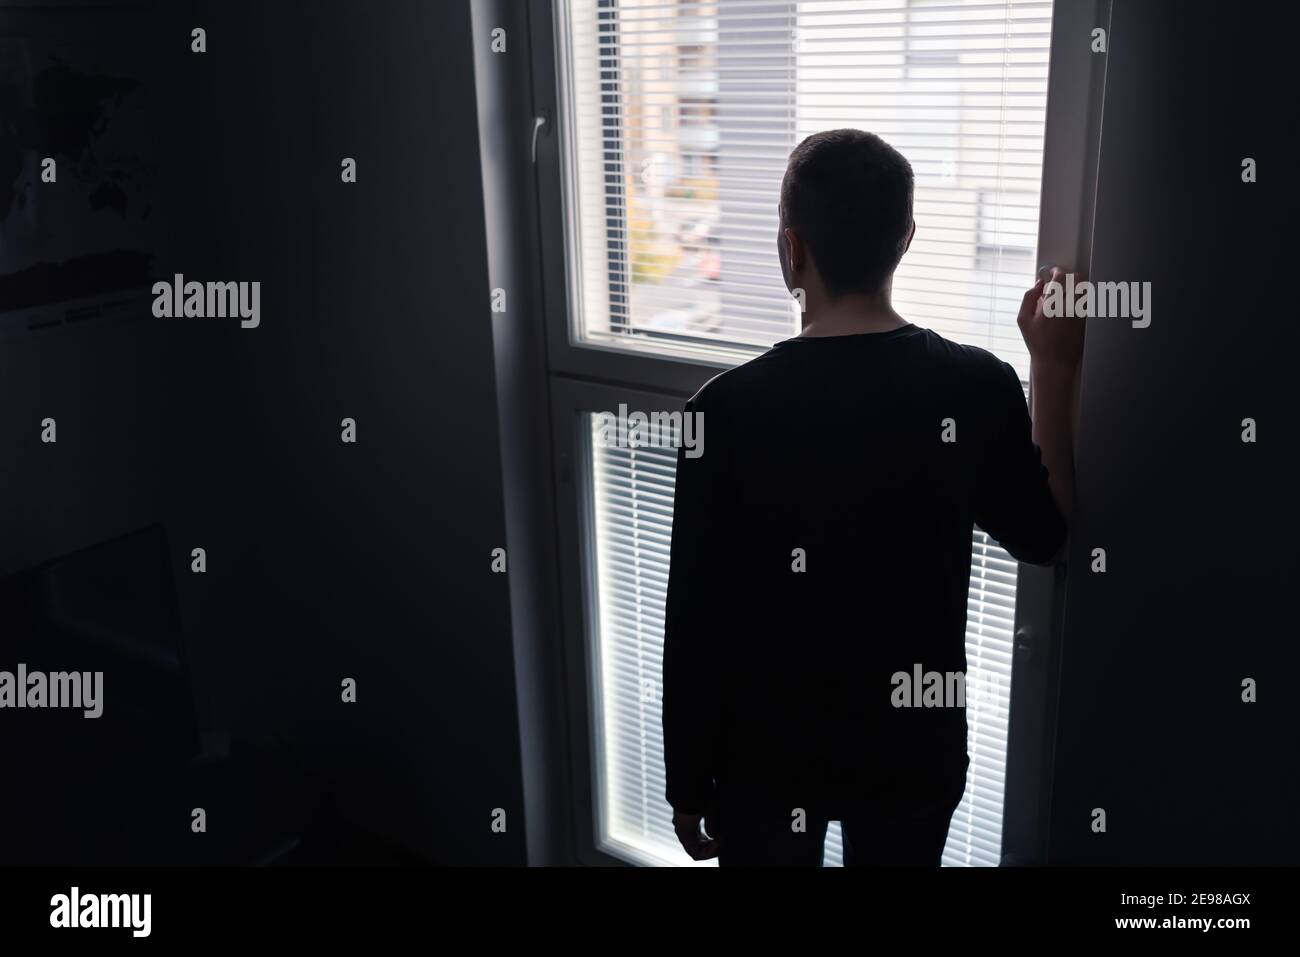 Hombre solitario mirando por la ventana. Concepto de soledad, aislamiento y soledad. Triste persona disgustada con pesar, vergüenza o estrés. Foto de stock